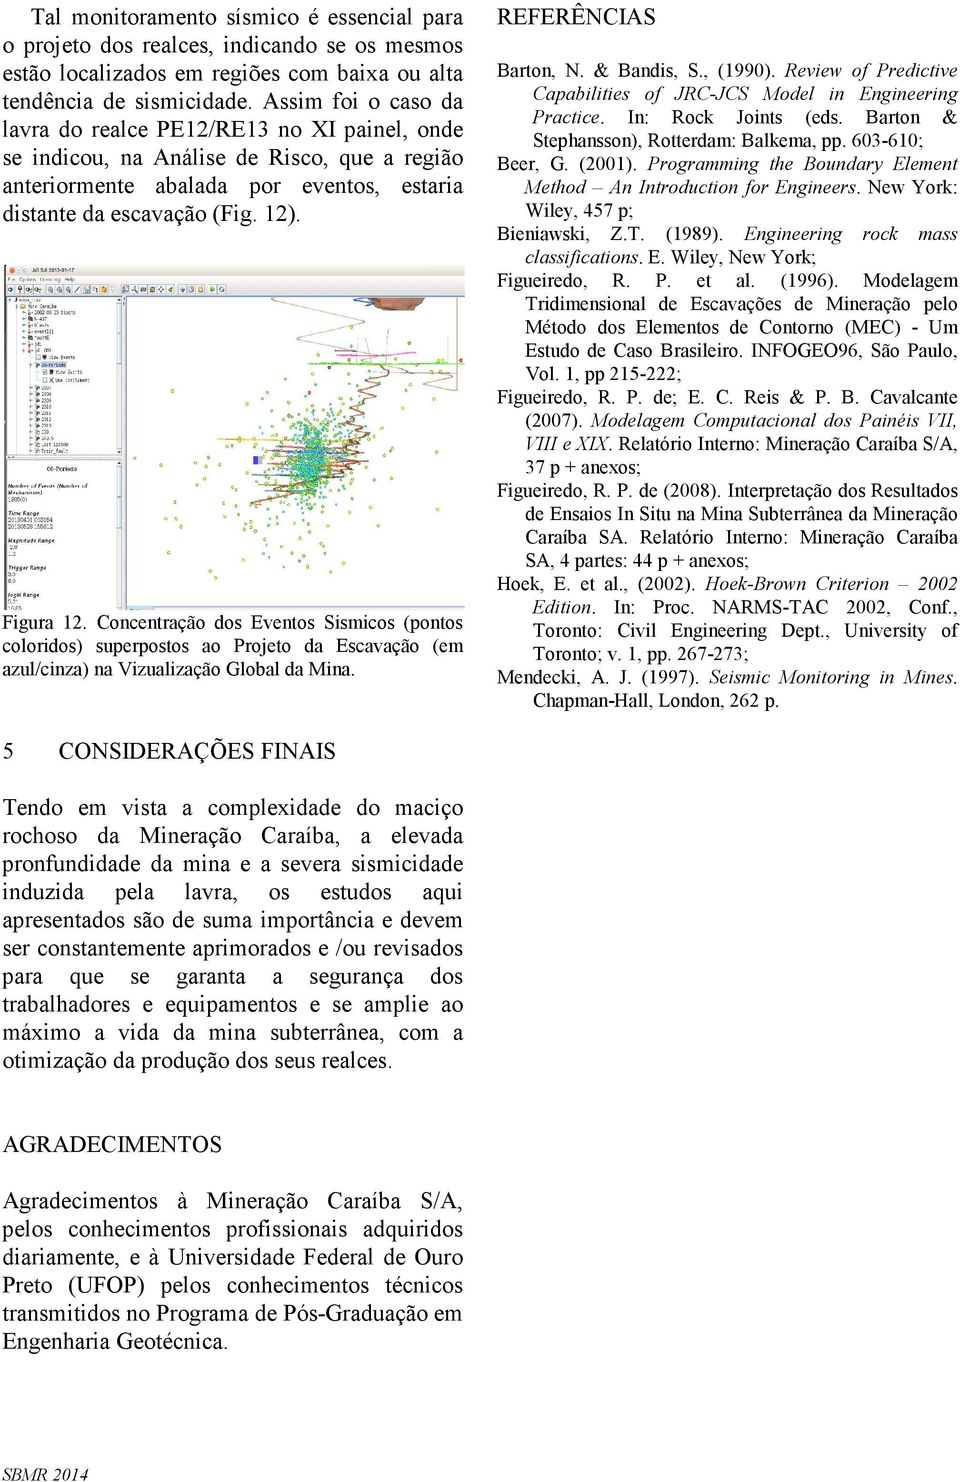 Concentração dos Eventos Sismicos (pontos coloridos) superpostos ao Projeto da Escavação (em azul/cinza) na Vizualização Global da Mina. REFERÊNCIAS Barton, N. & Bandis, S., (1990).